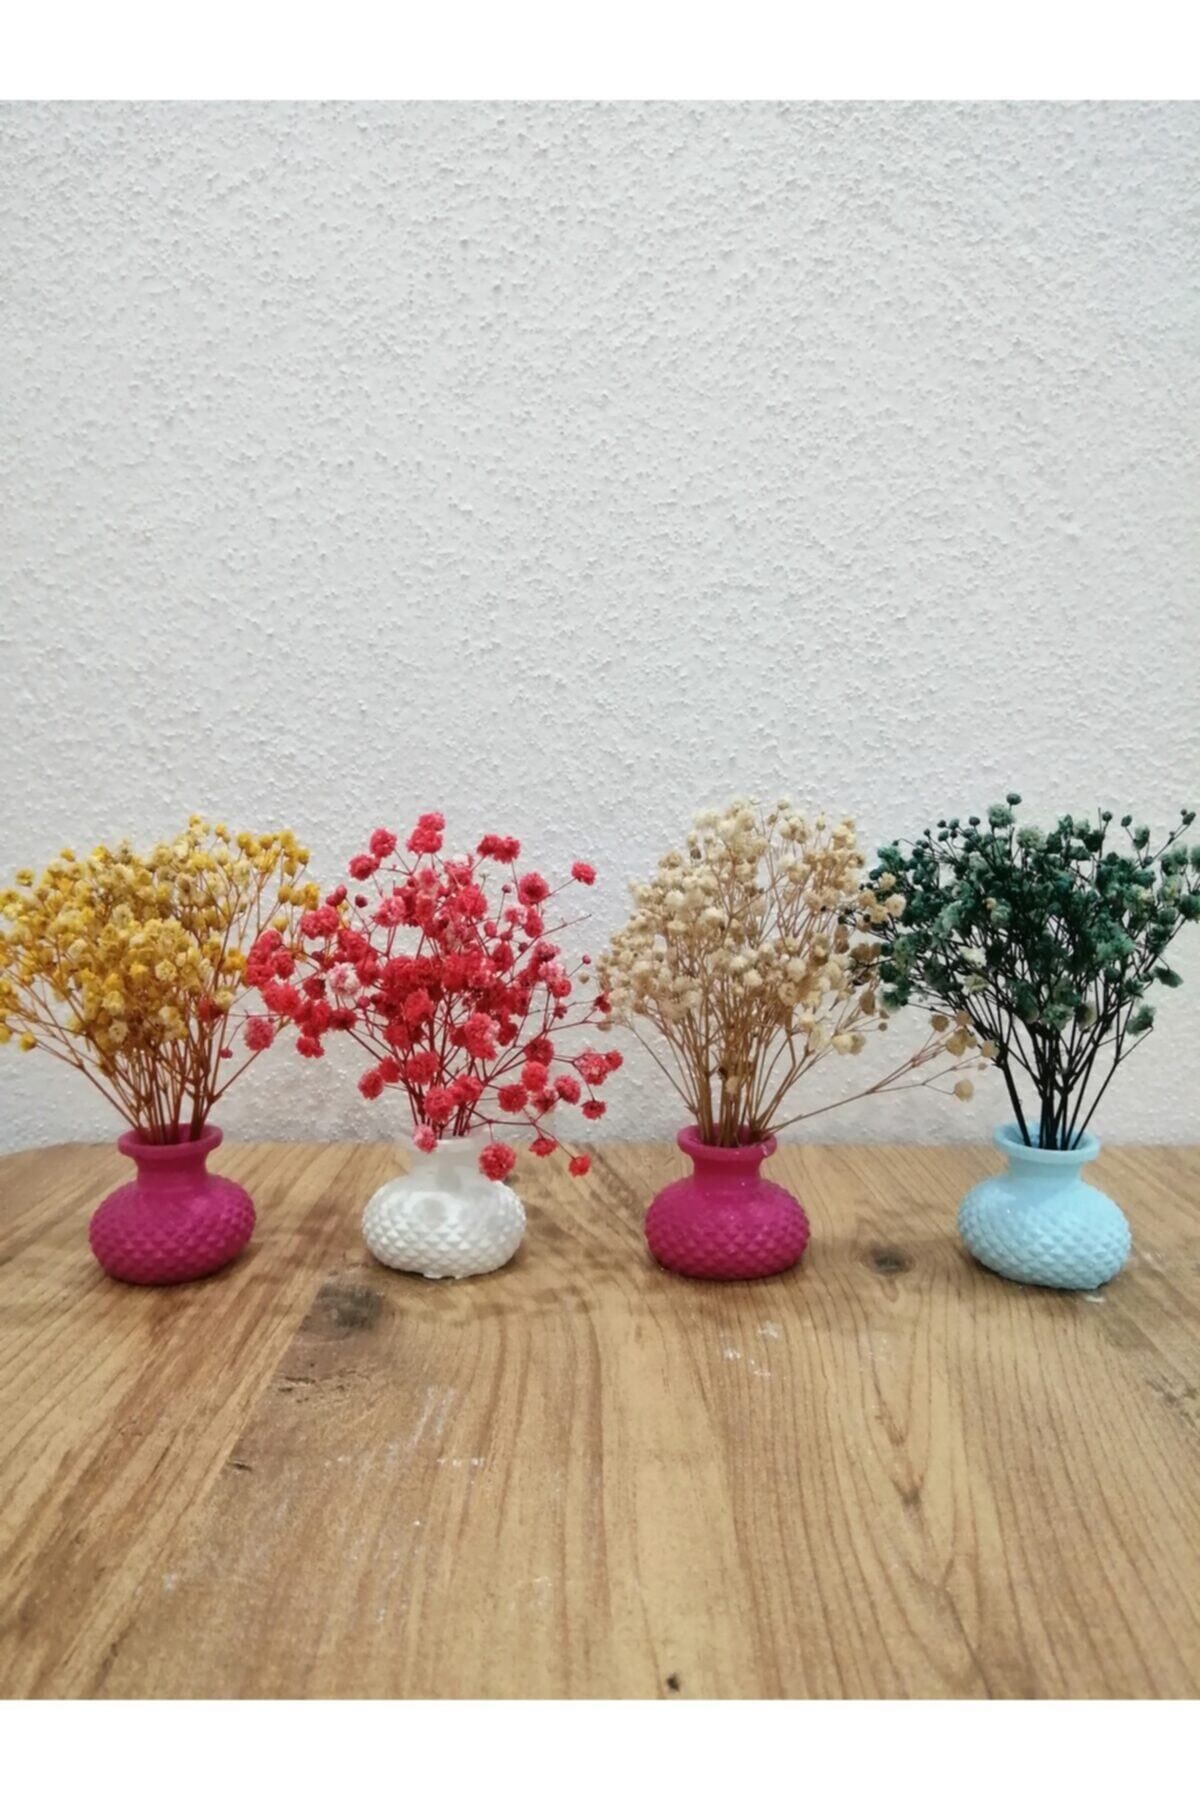 MRN DESIGN HOME Sunumluk Vazo Takımı 4 Adet Ve Çiçekleri